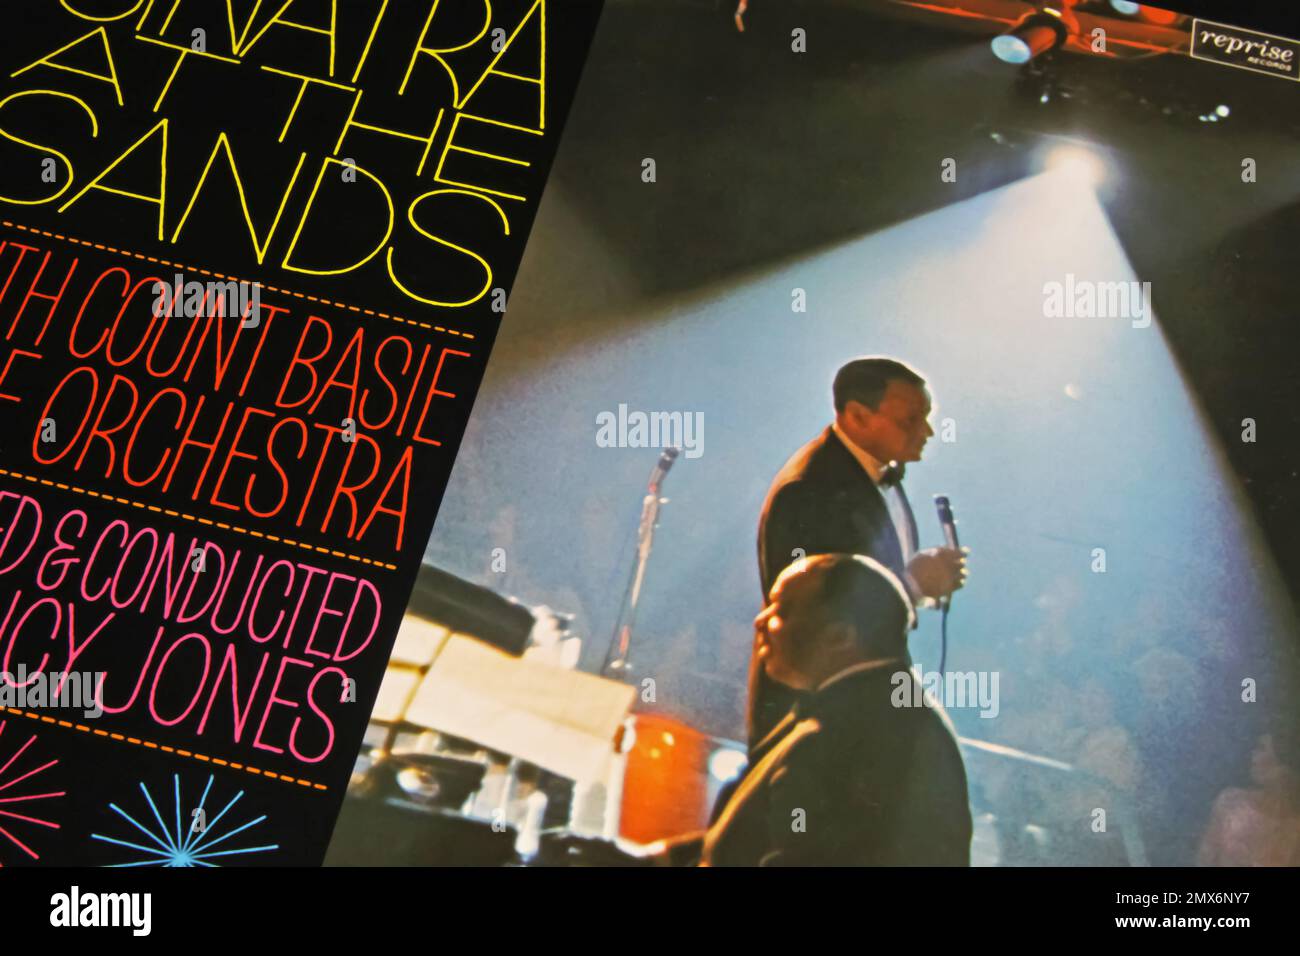 Viersen, Allemagne - 8. Juin 2022: Gros plan de l'album de couverture de disque vinyle Sinatra au sable avec le comte Basie orchestre 1966 Banque D'Images